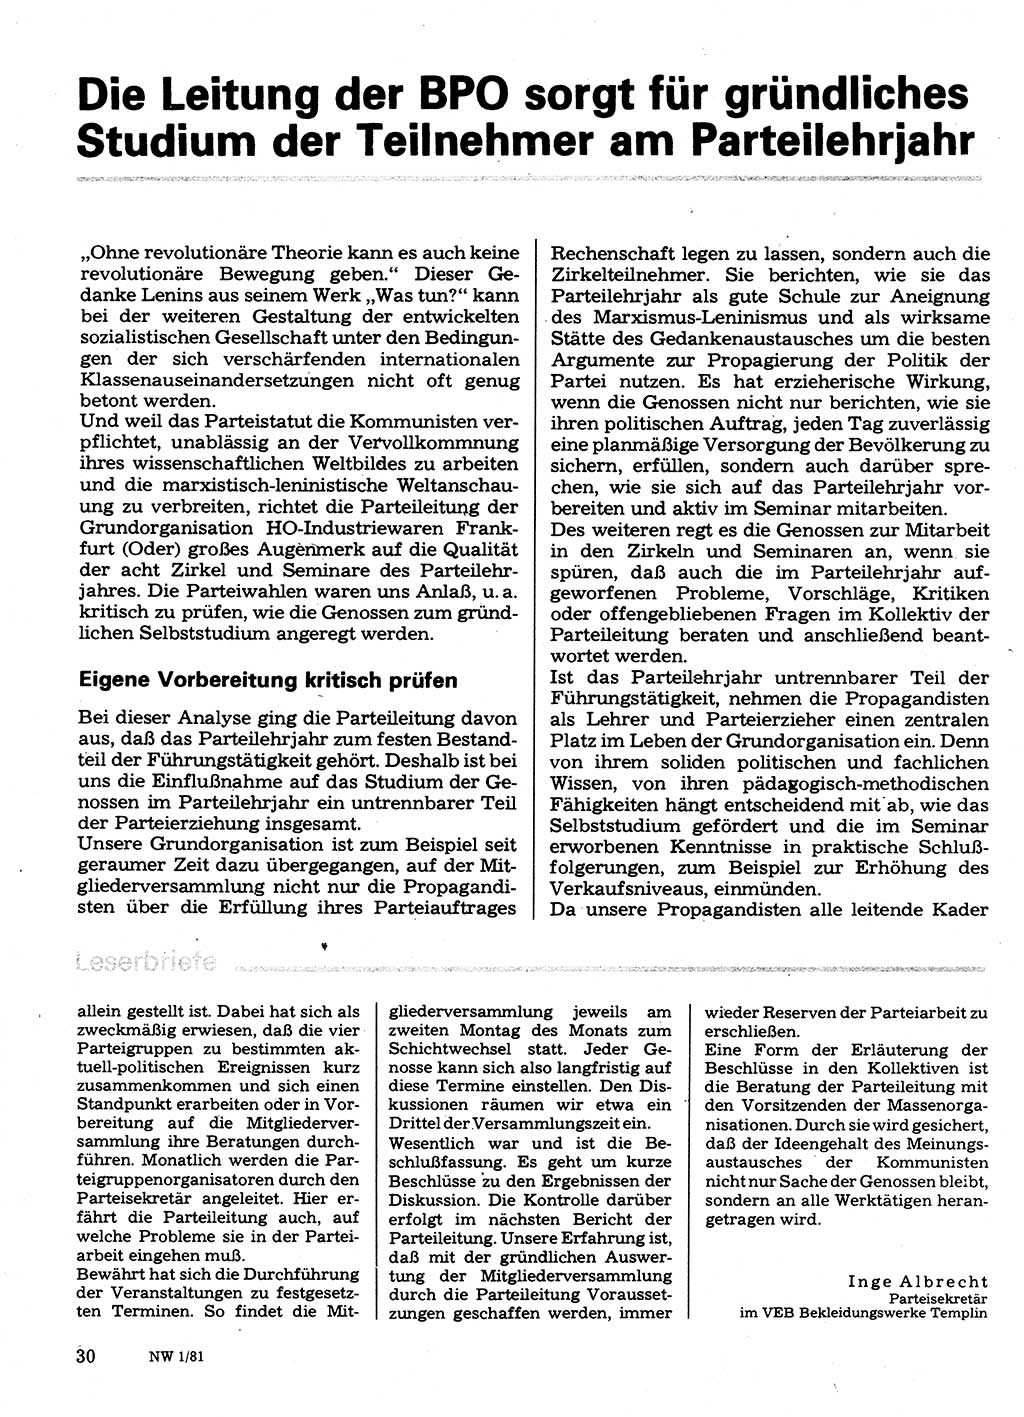 Neuer Weg (NW), Organ des Zentralkomitees (ZK) der SED (Sozialistische Einheitspartei Deutschlands) für Fragen des Parteilebens, 36. Jahrgang [Deutsche Demokratische Republik (DDR)] 1981, Seite 30 (NW ZK SED DDR 1981, S. 30)